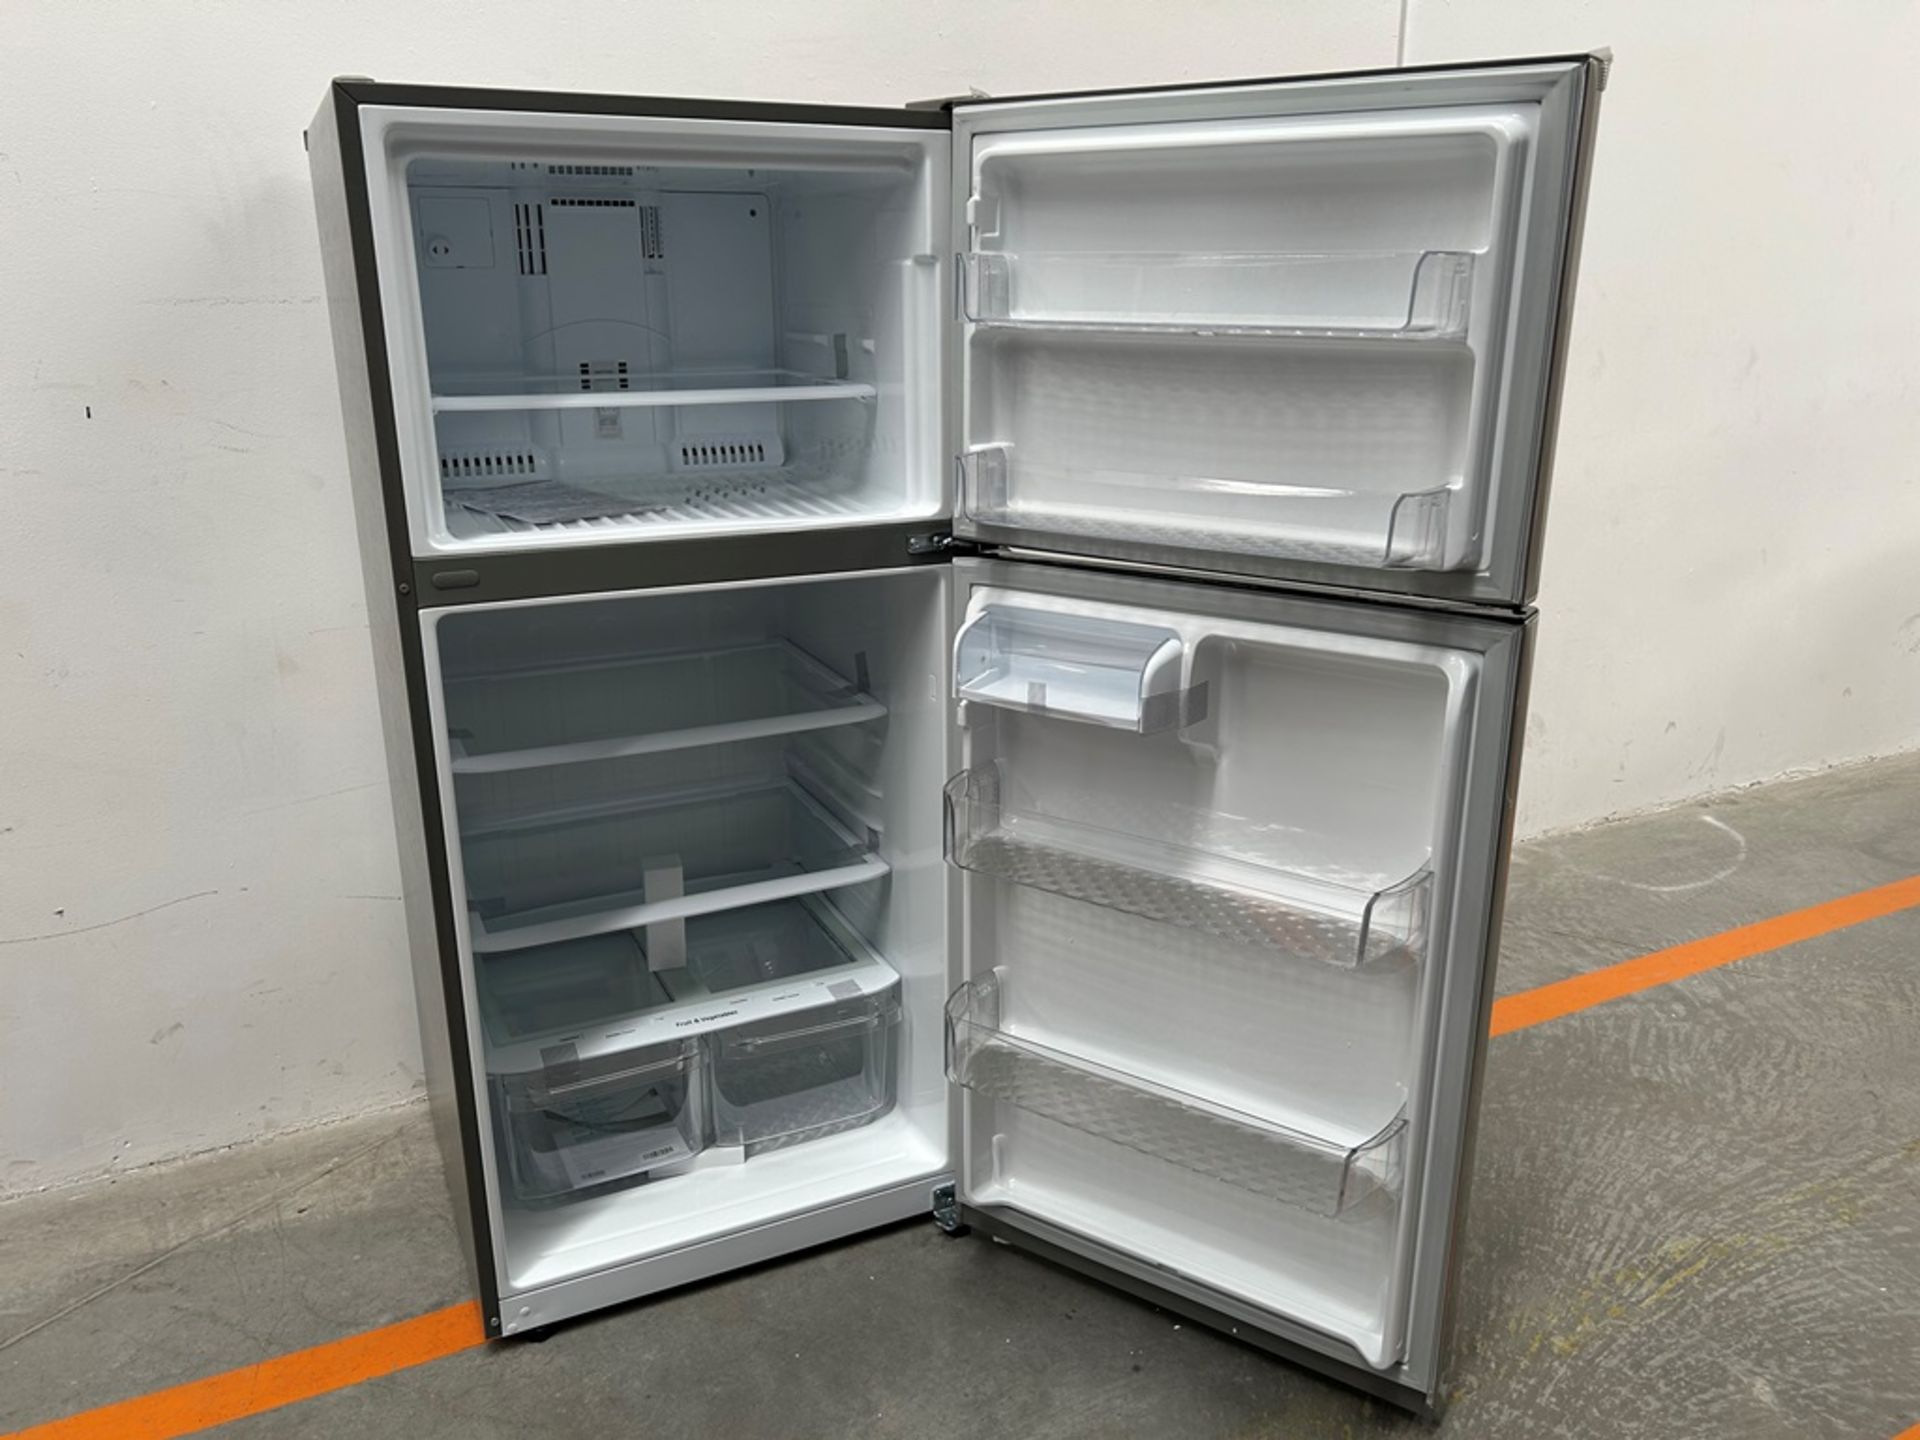 (NUEVO) Refrigerador Marca LG, Modelo LT57BPSX, Serie 2D689, Color GRIS - Image 4 of 7